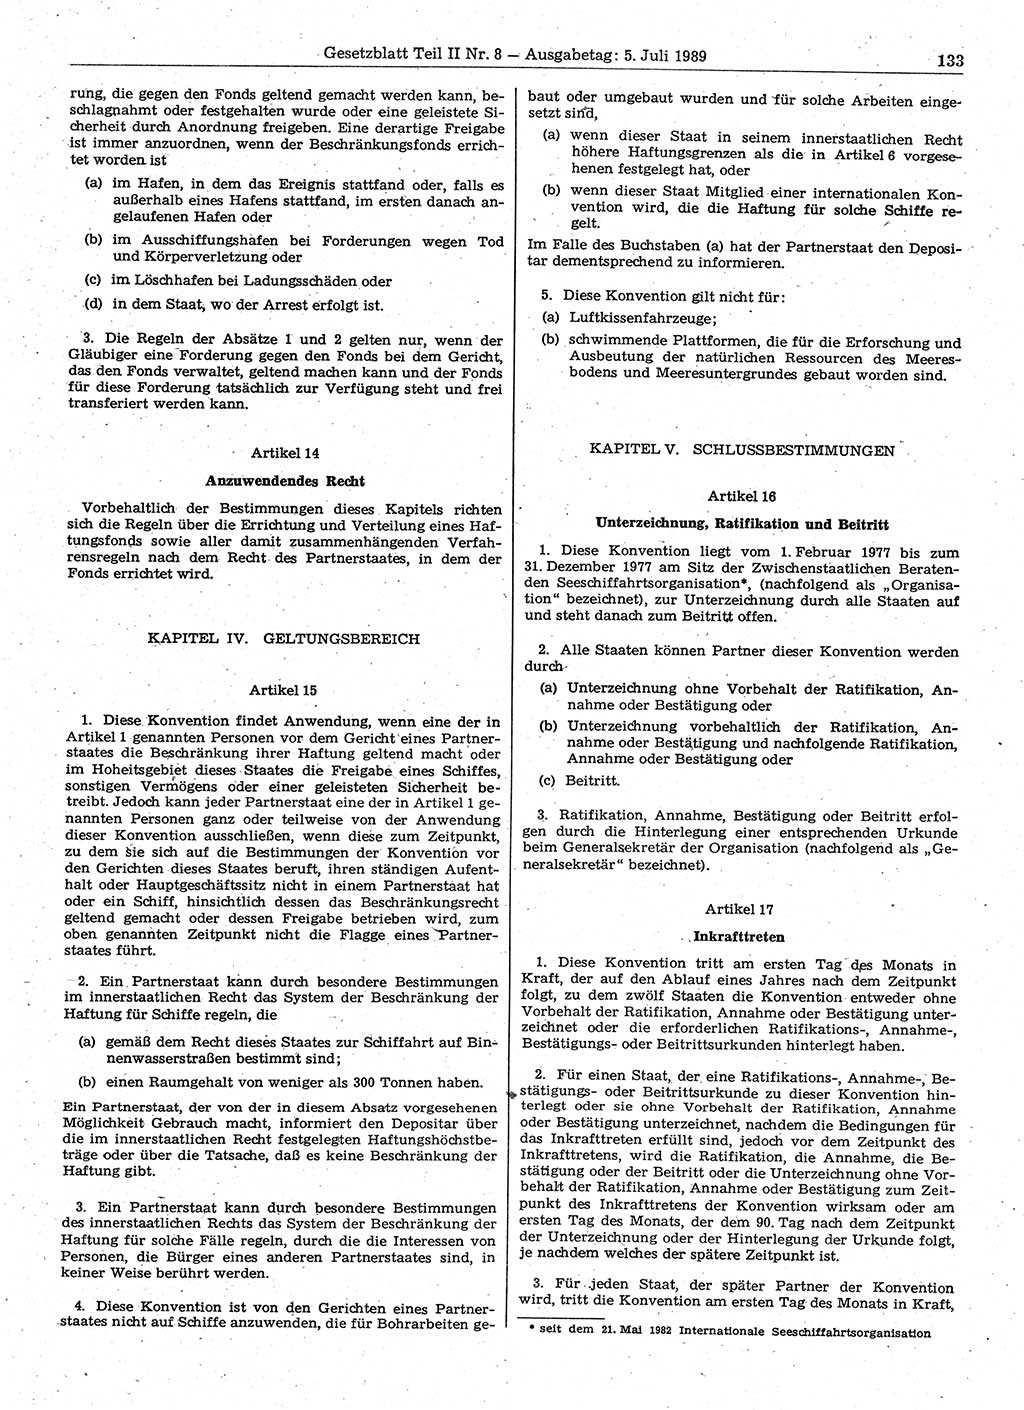 Gesetzblatt (GBl.) der Deutschen Demokratischen Republik (DDR) Teil ⅠⅠ 1989, Seite 133 (GBl. DDR ⅠⅠ 1989, S. 133)